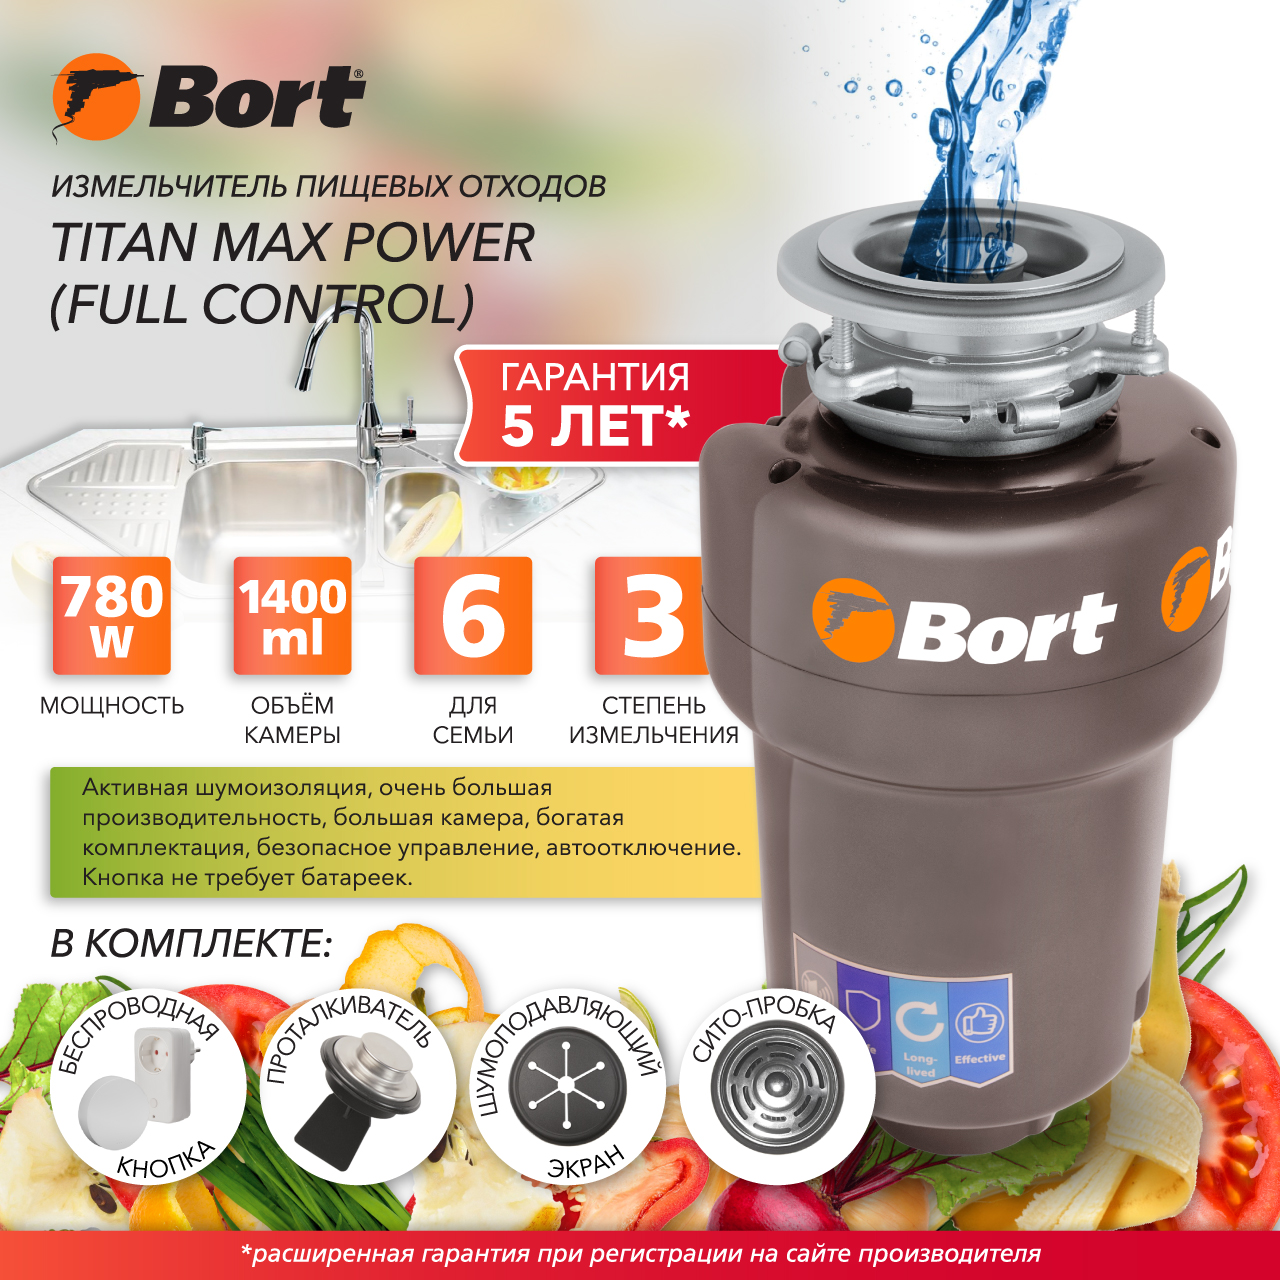 Измельчитель пищевых отходов Bort TITAN MAX POWER FULLCONTROL (93410266) серебристый измельчитель пищевых отходов bort titan max power 91275790 серебристый